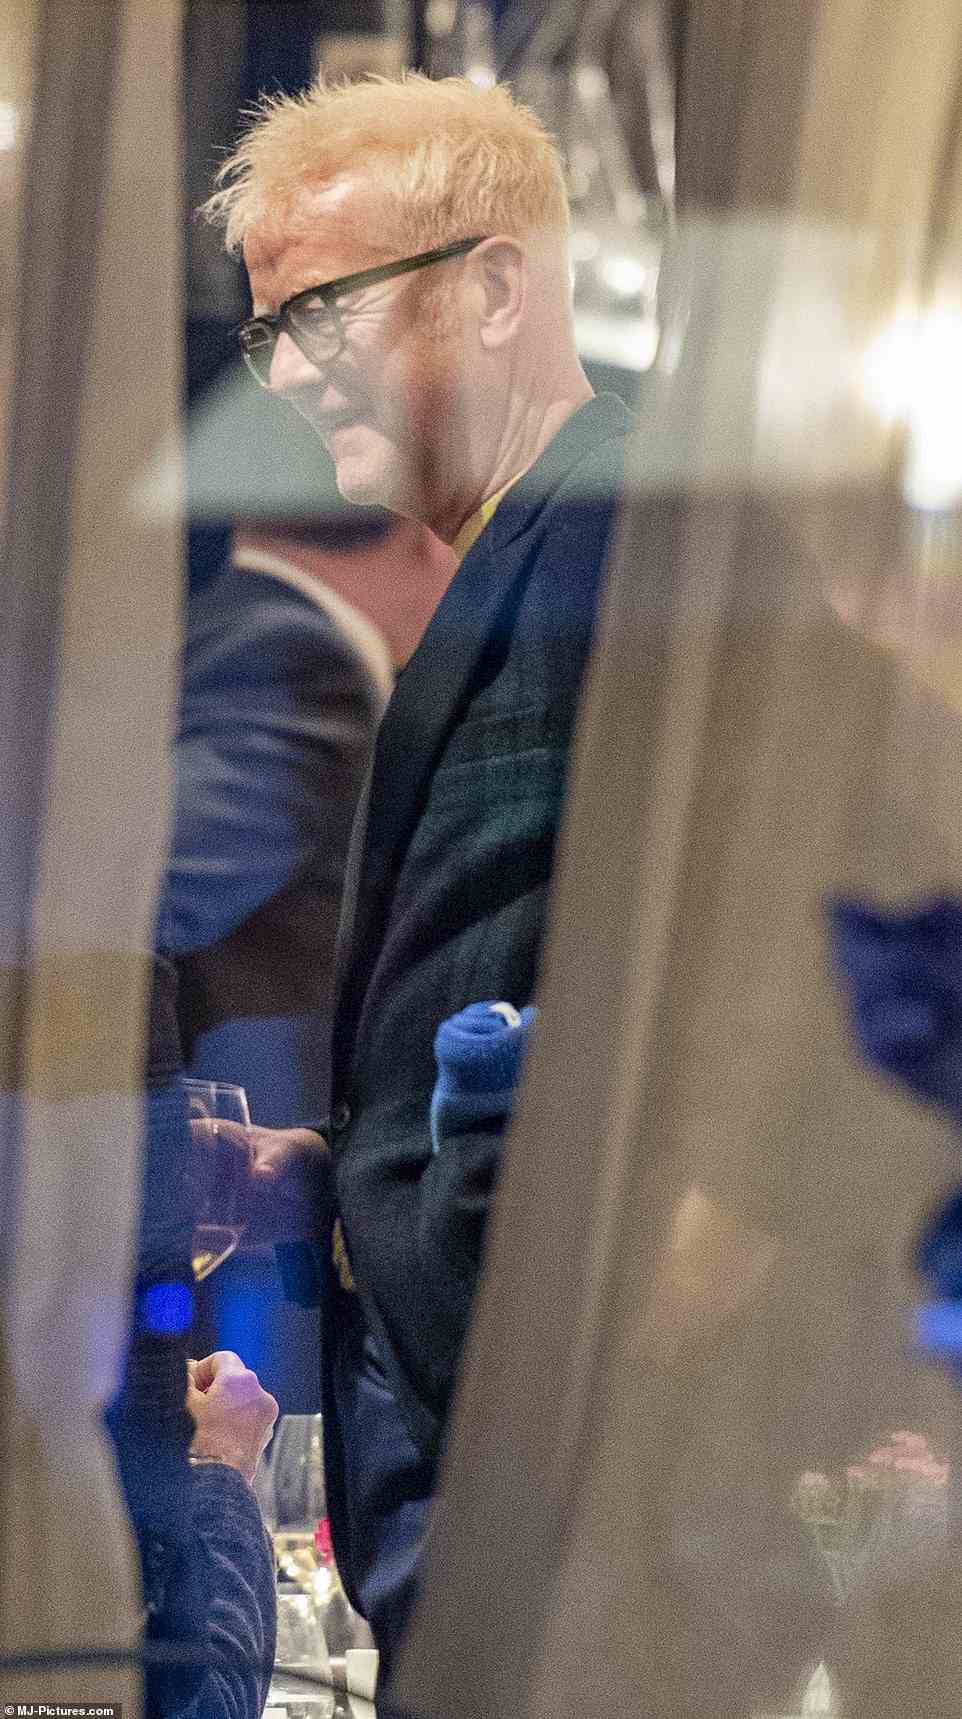 Fernsehmoderator Chris Evans (im Bild) gehörte zu den berühmten Gesichtern bei der glitzernden Mittagspause am Mittwoch im Zentrum von London